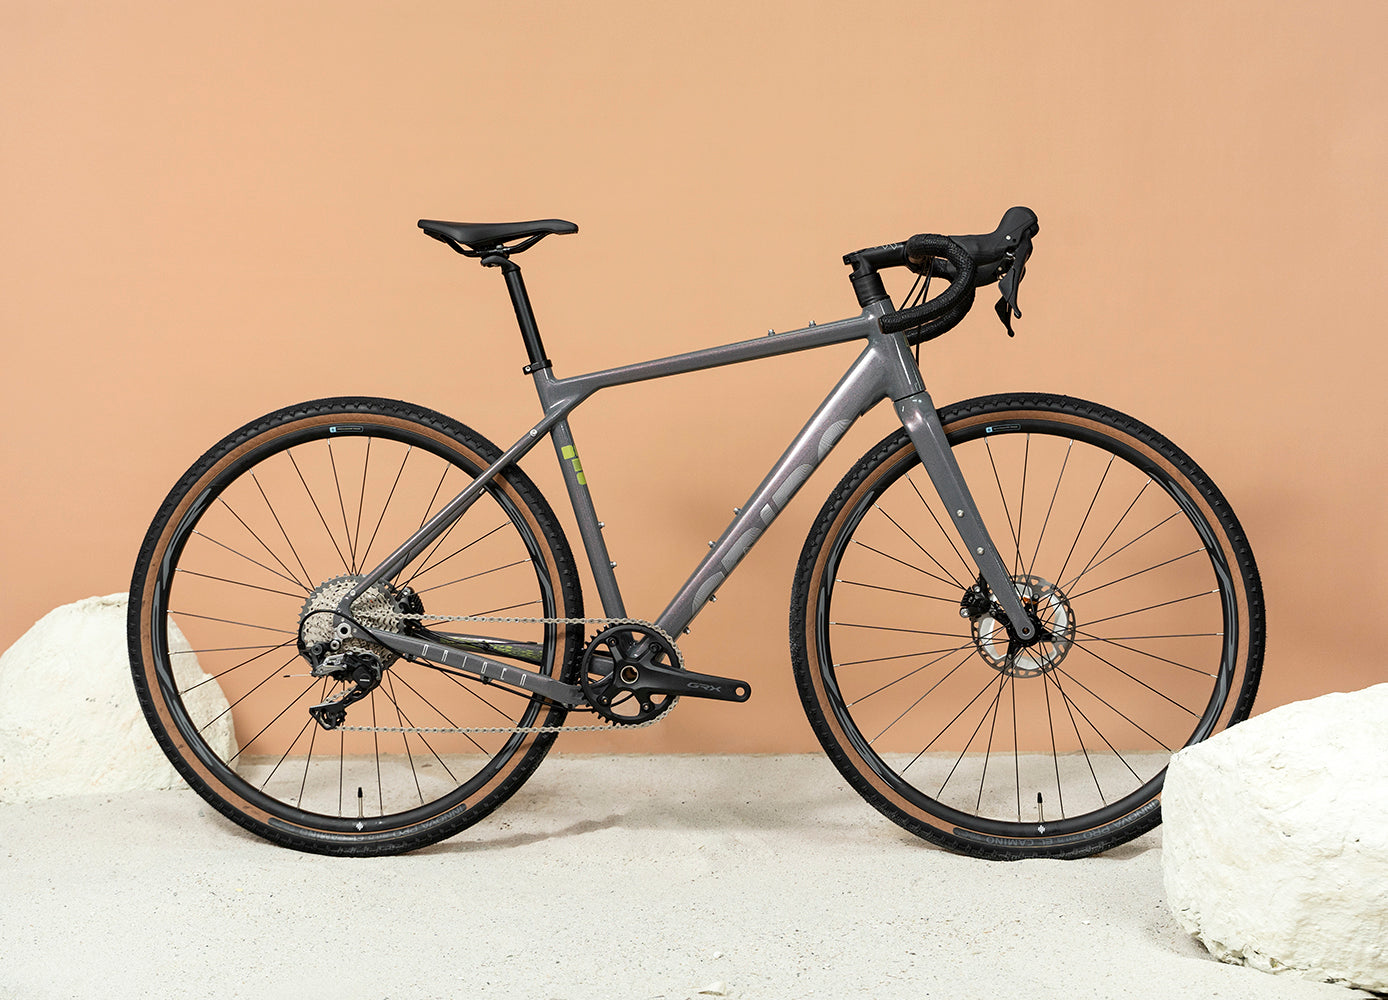 Bicicleta de gravel en aluminio Origen Bambuco